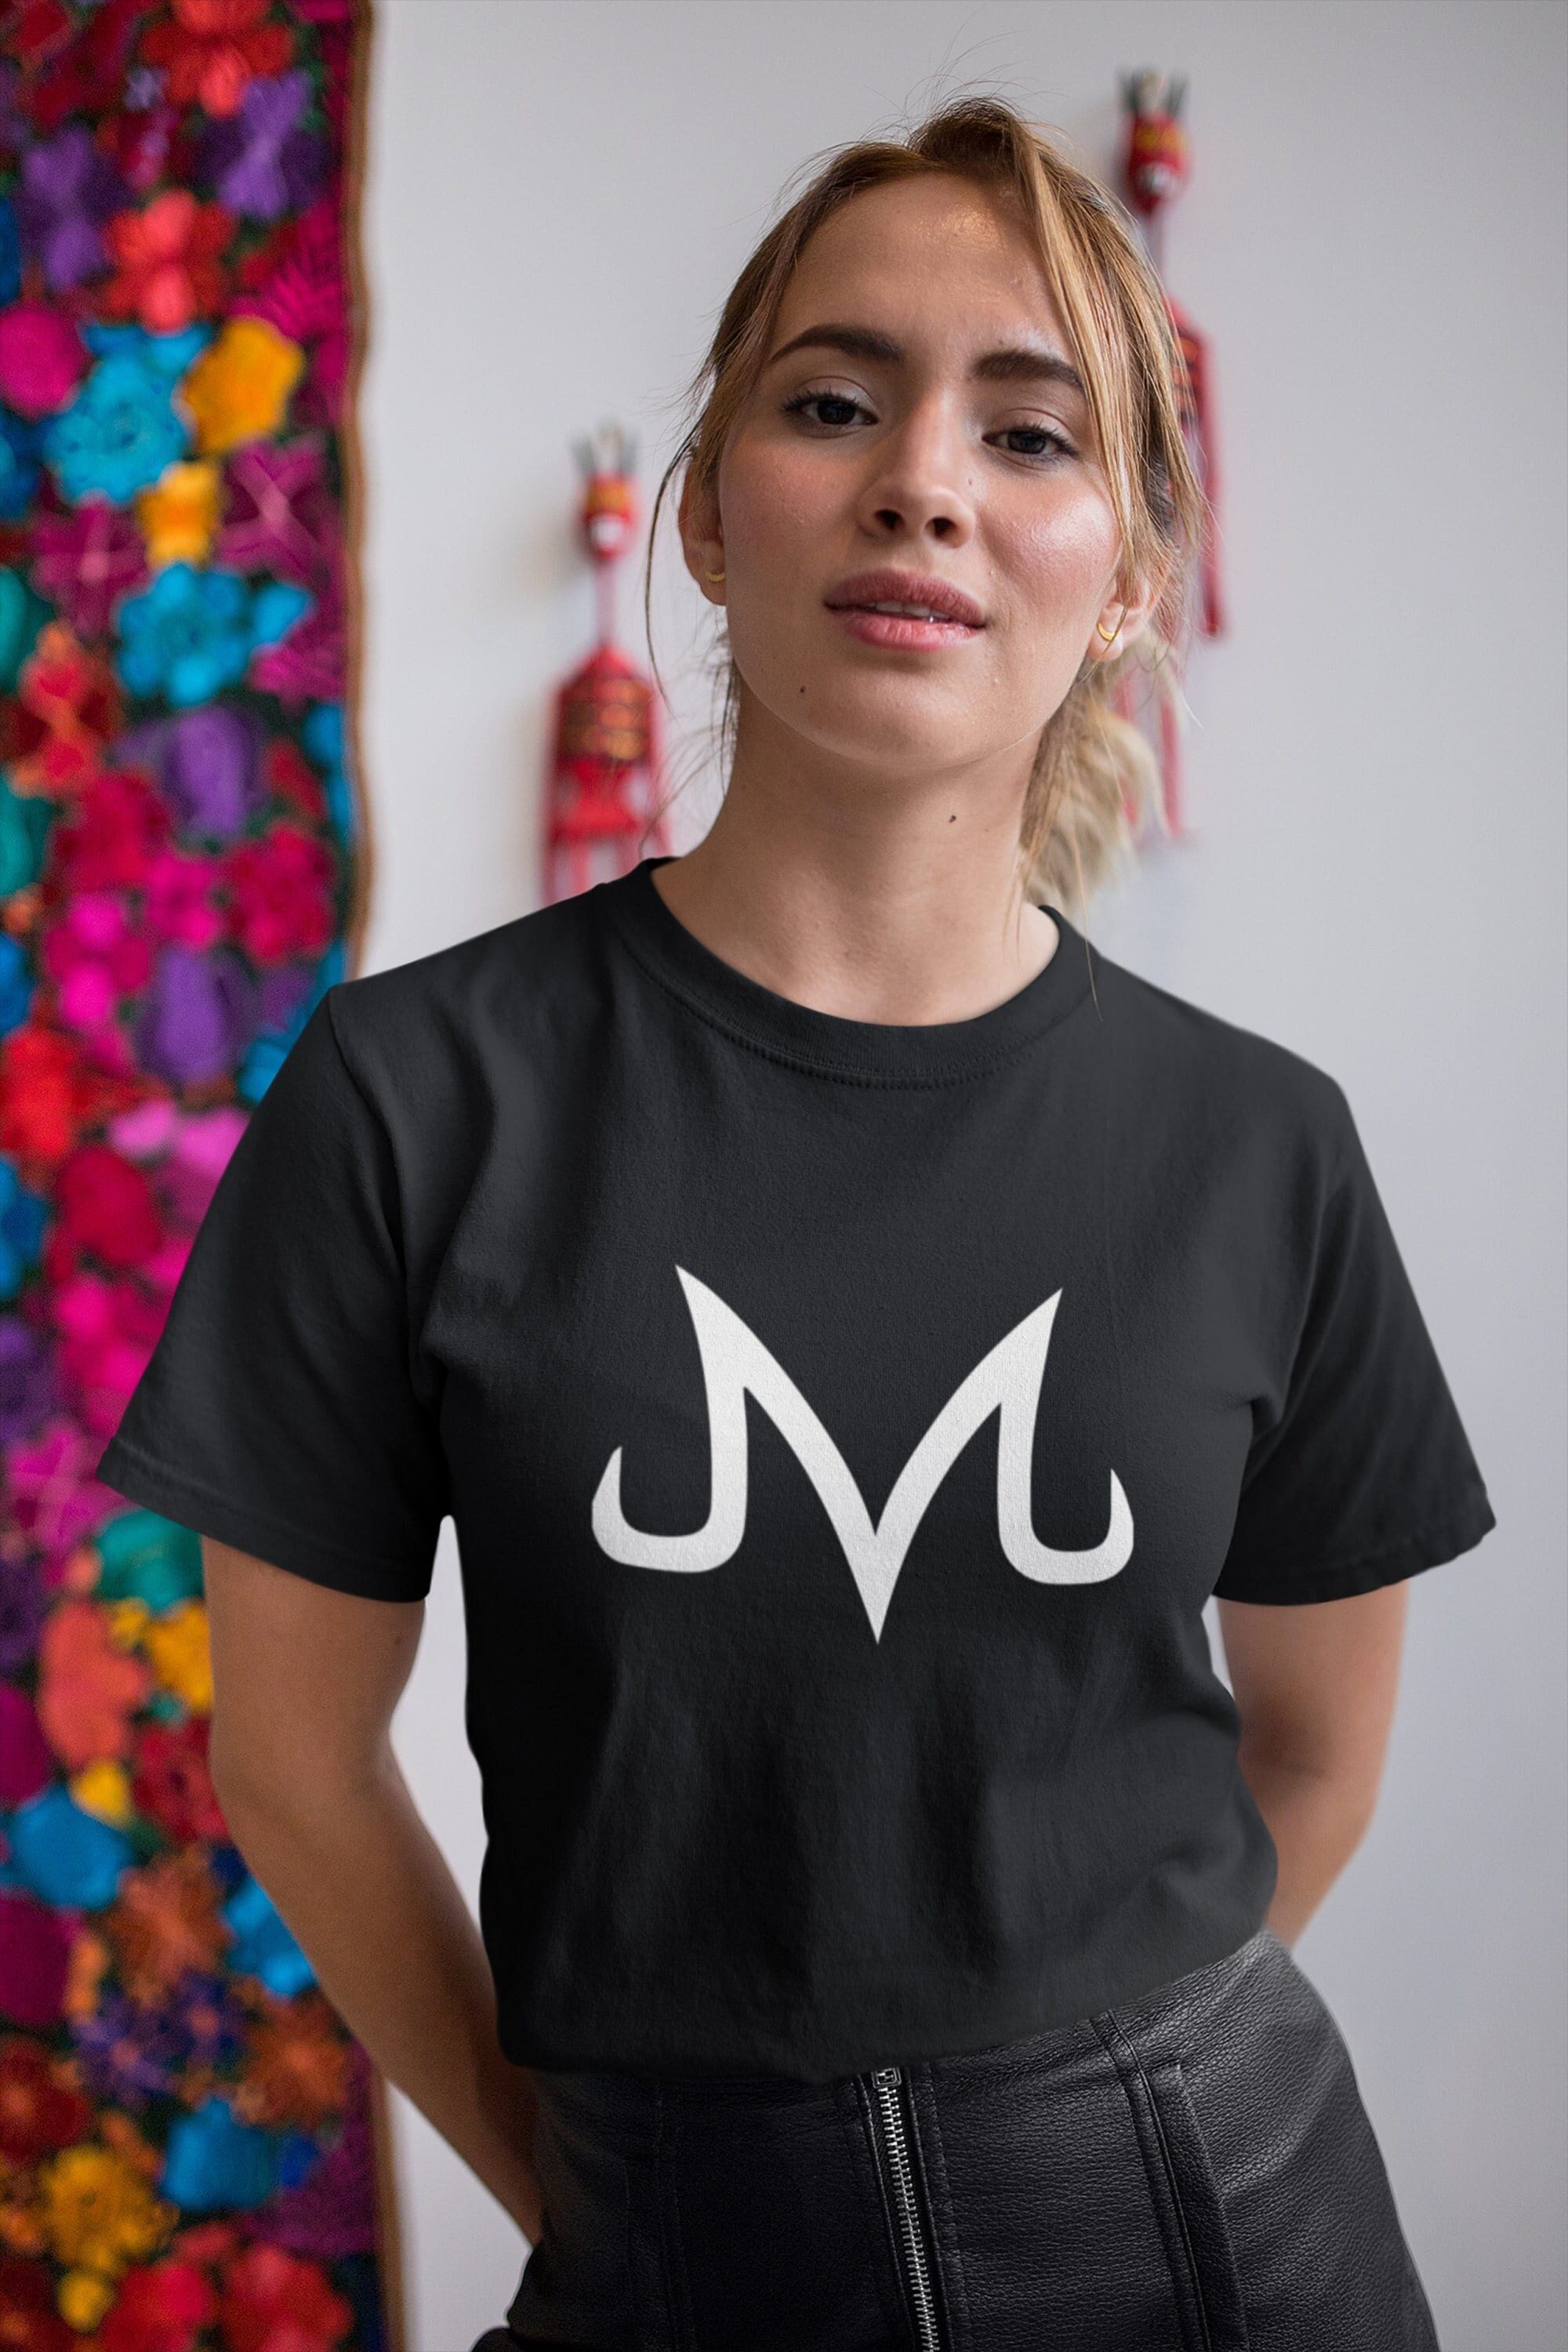 Majin Boo Kids T-Shirt by SaulCordan